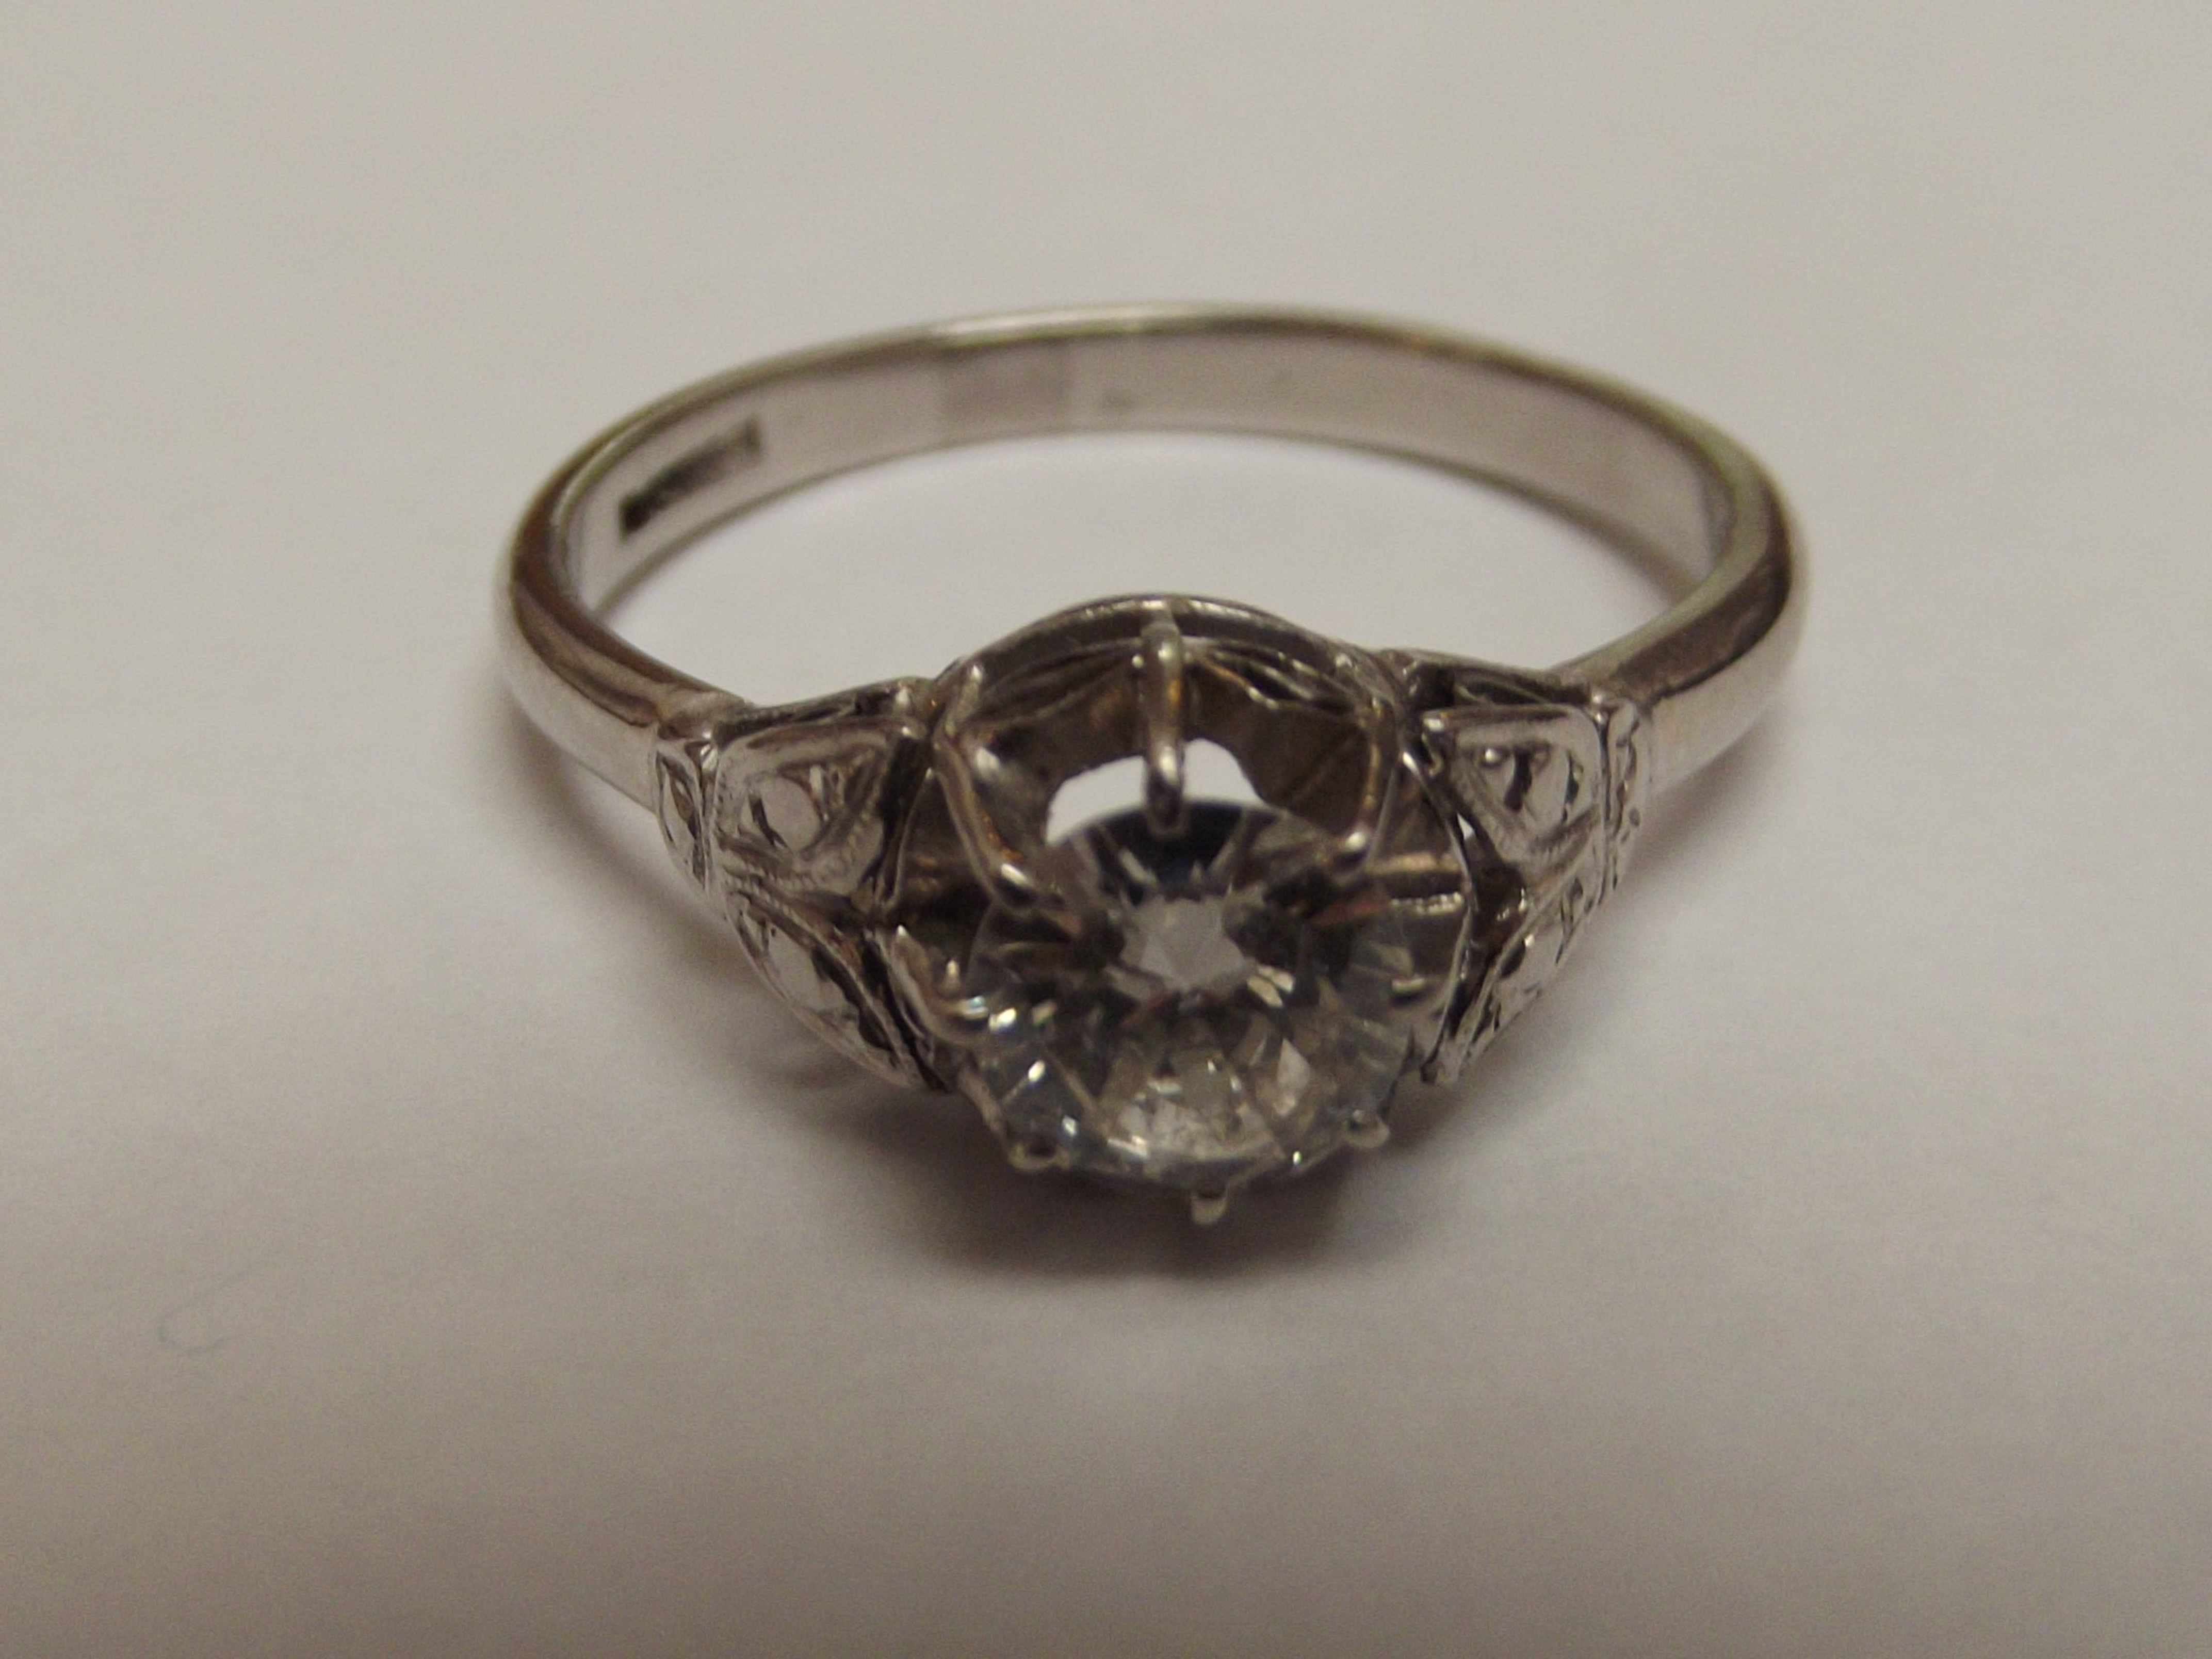 Diamond solitaire platinum ring, round brilliant c - Image 3 of 3